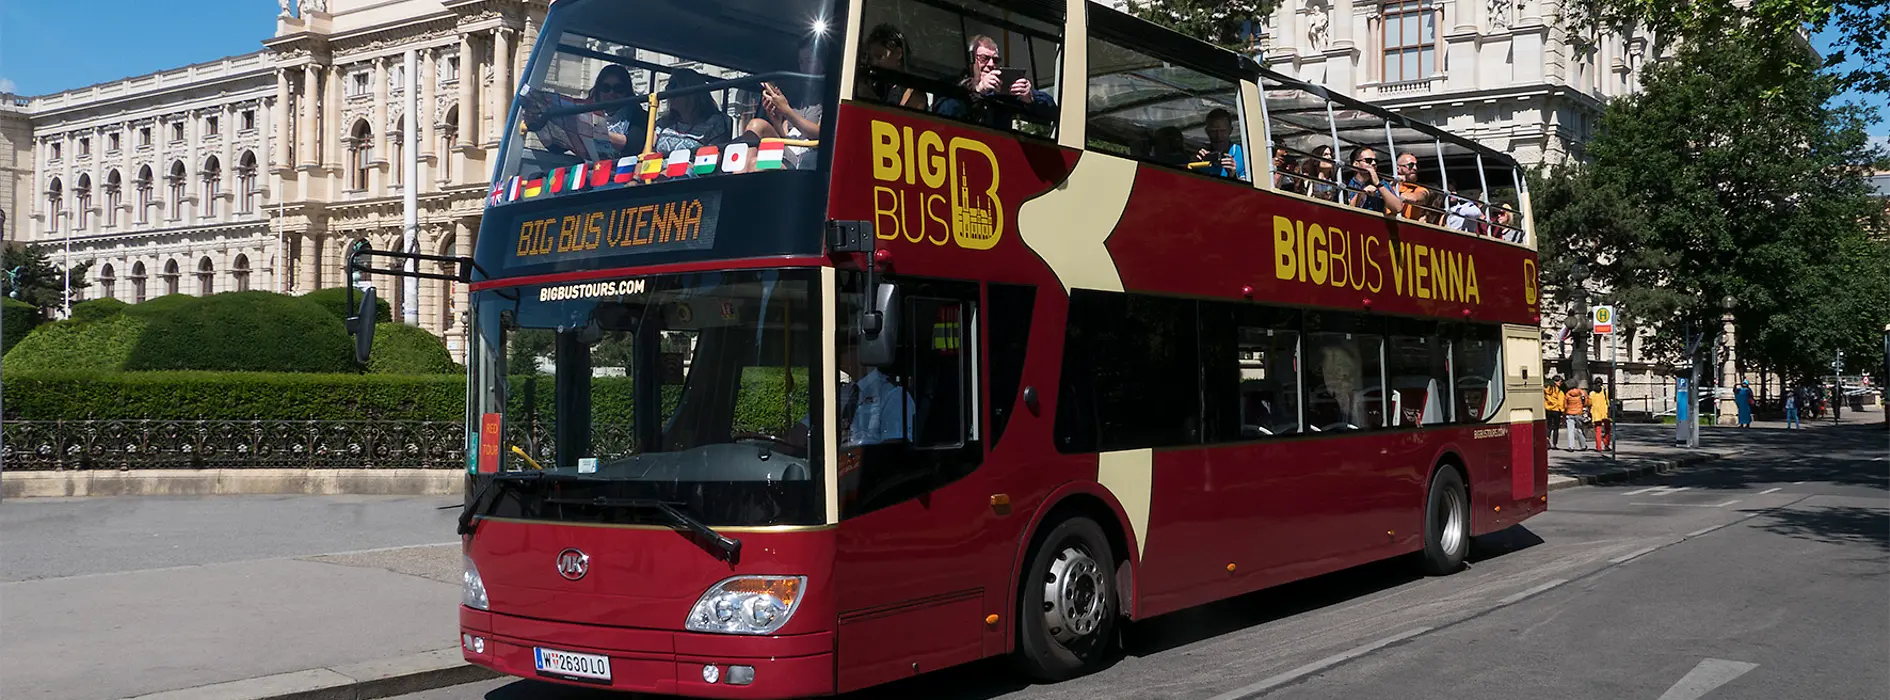 Big Bus Vienna - czerwony autobus piętrowy